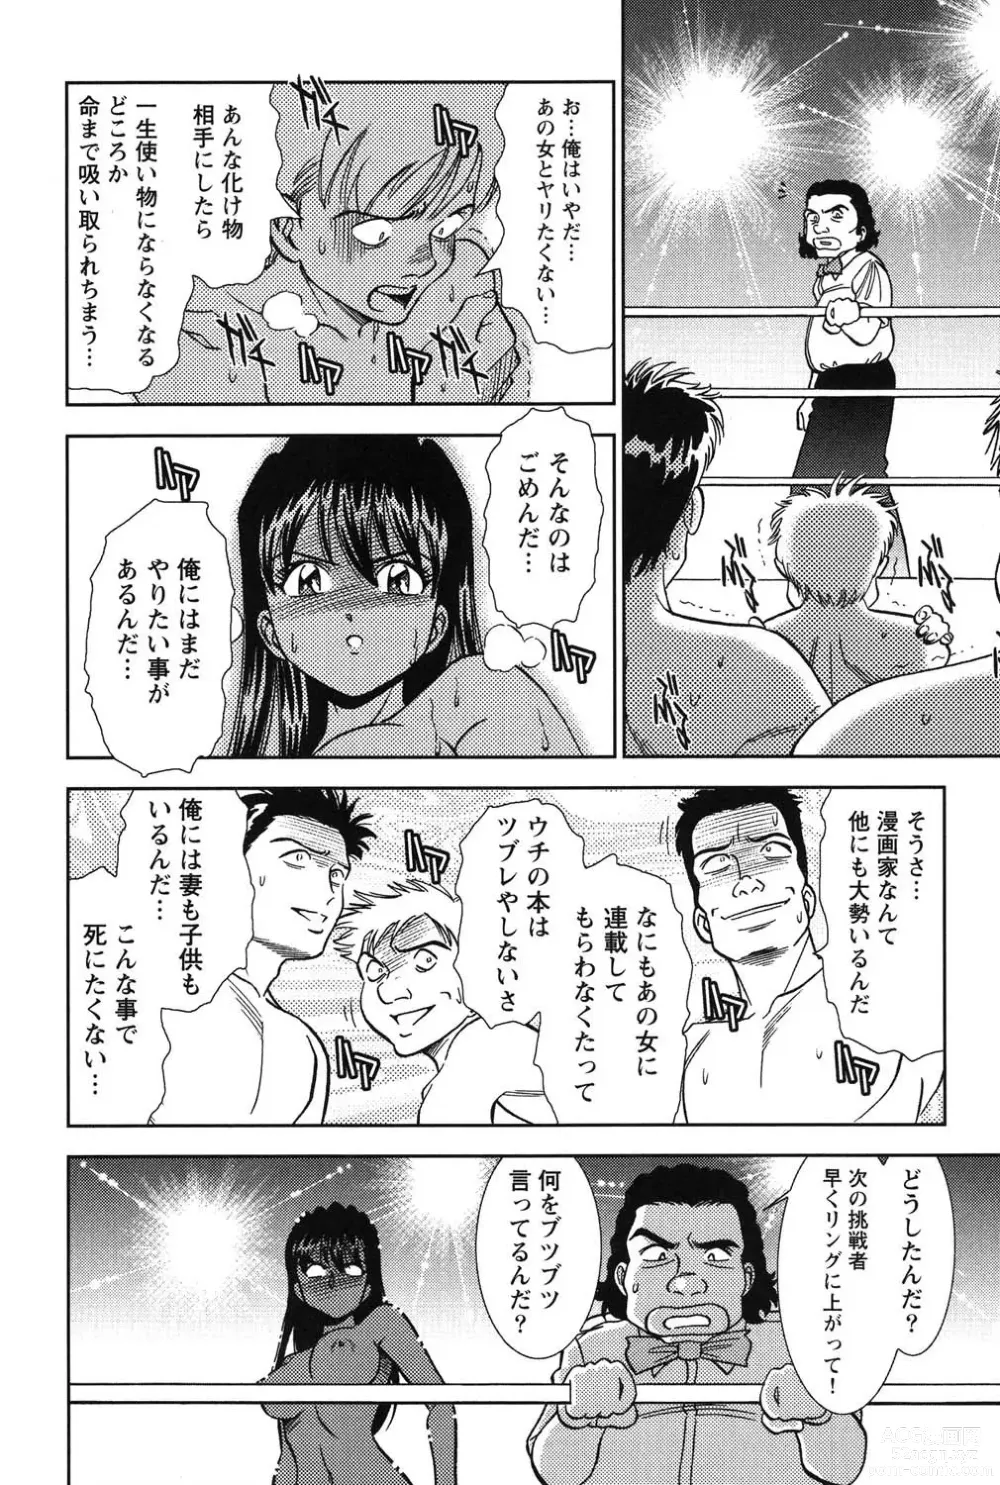 Page 217 of manga Bambina Oiroke  Battle  Hen